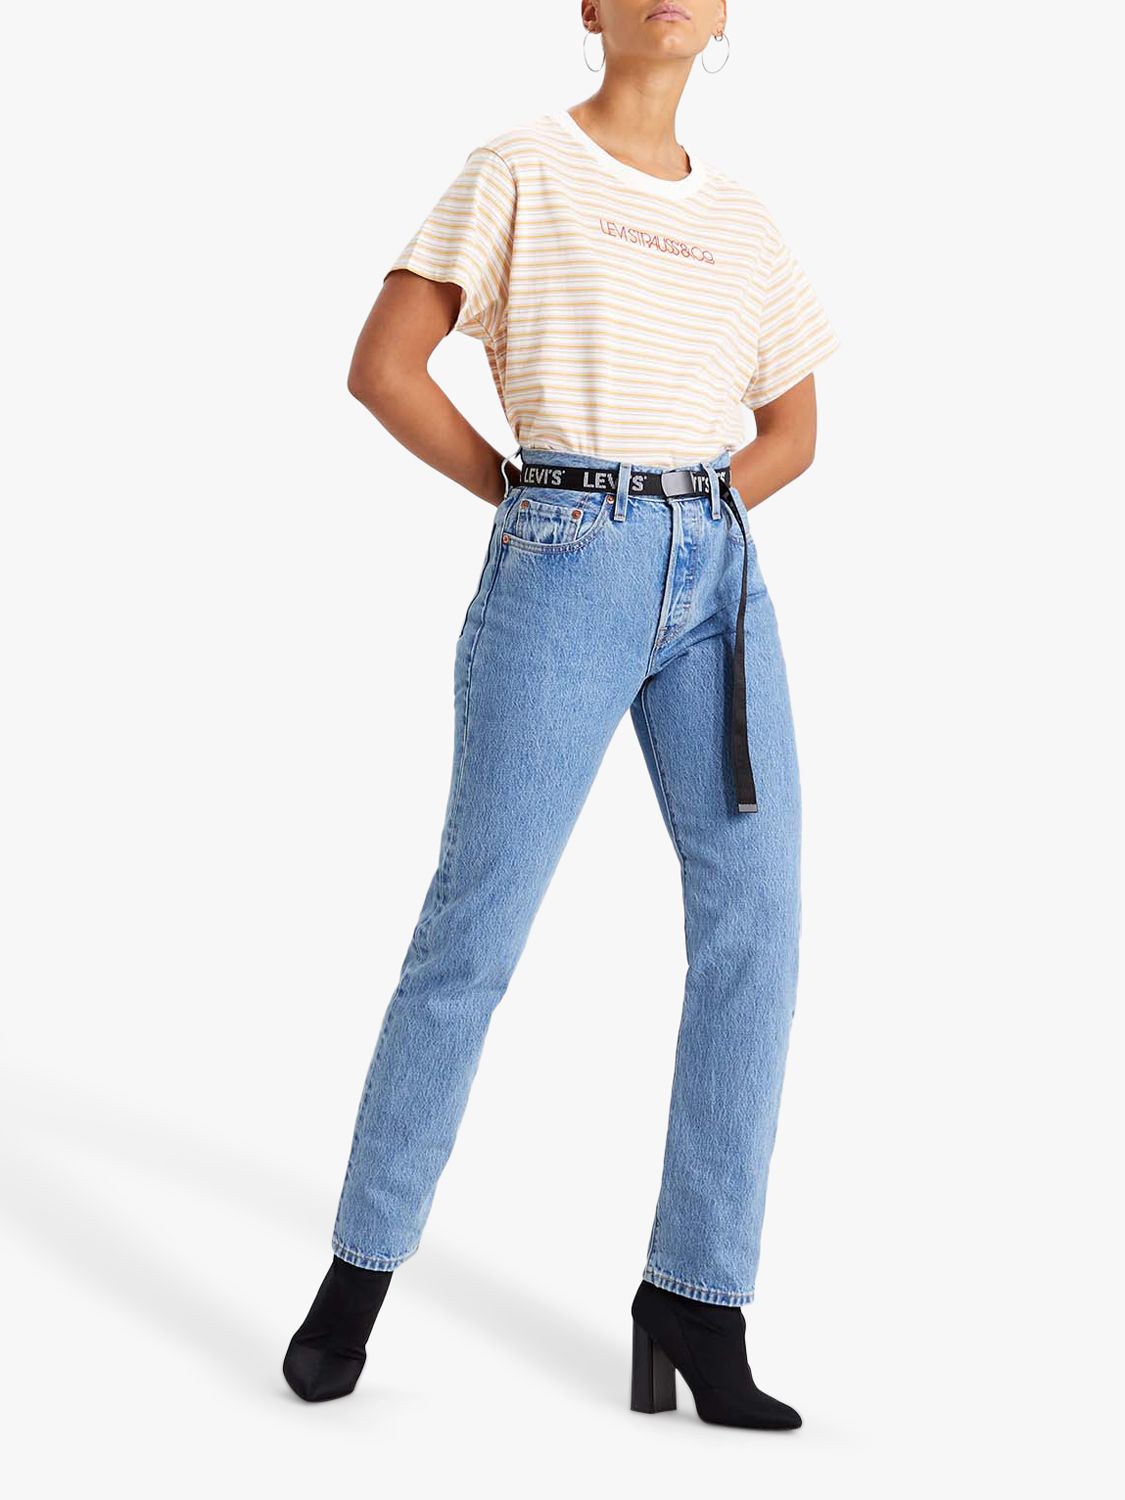 buy levis 501 jeans